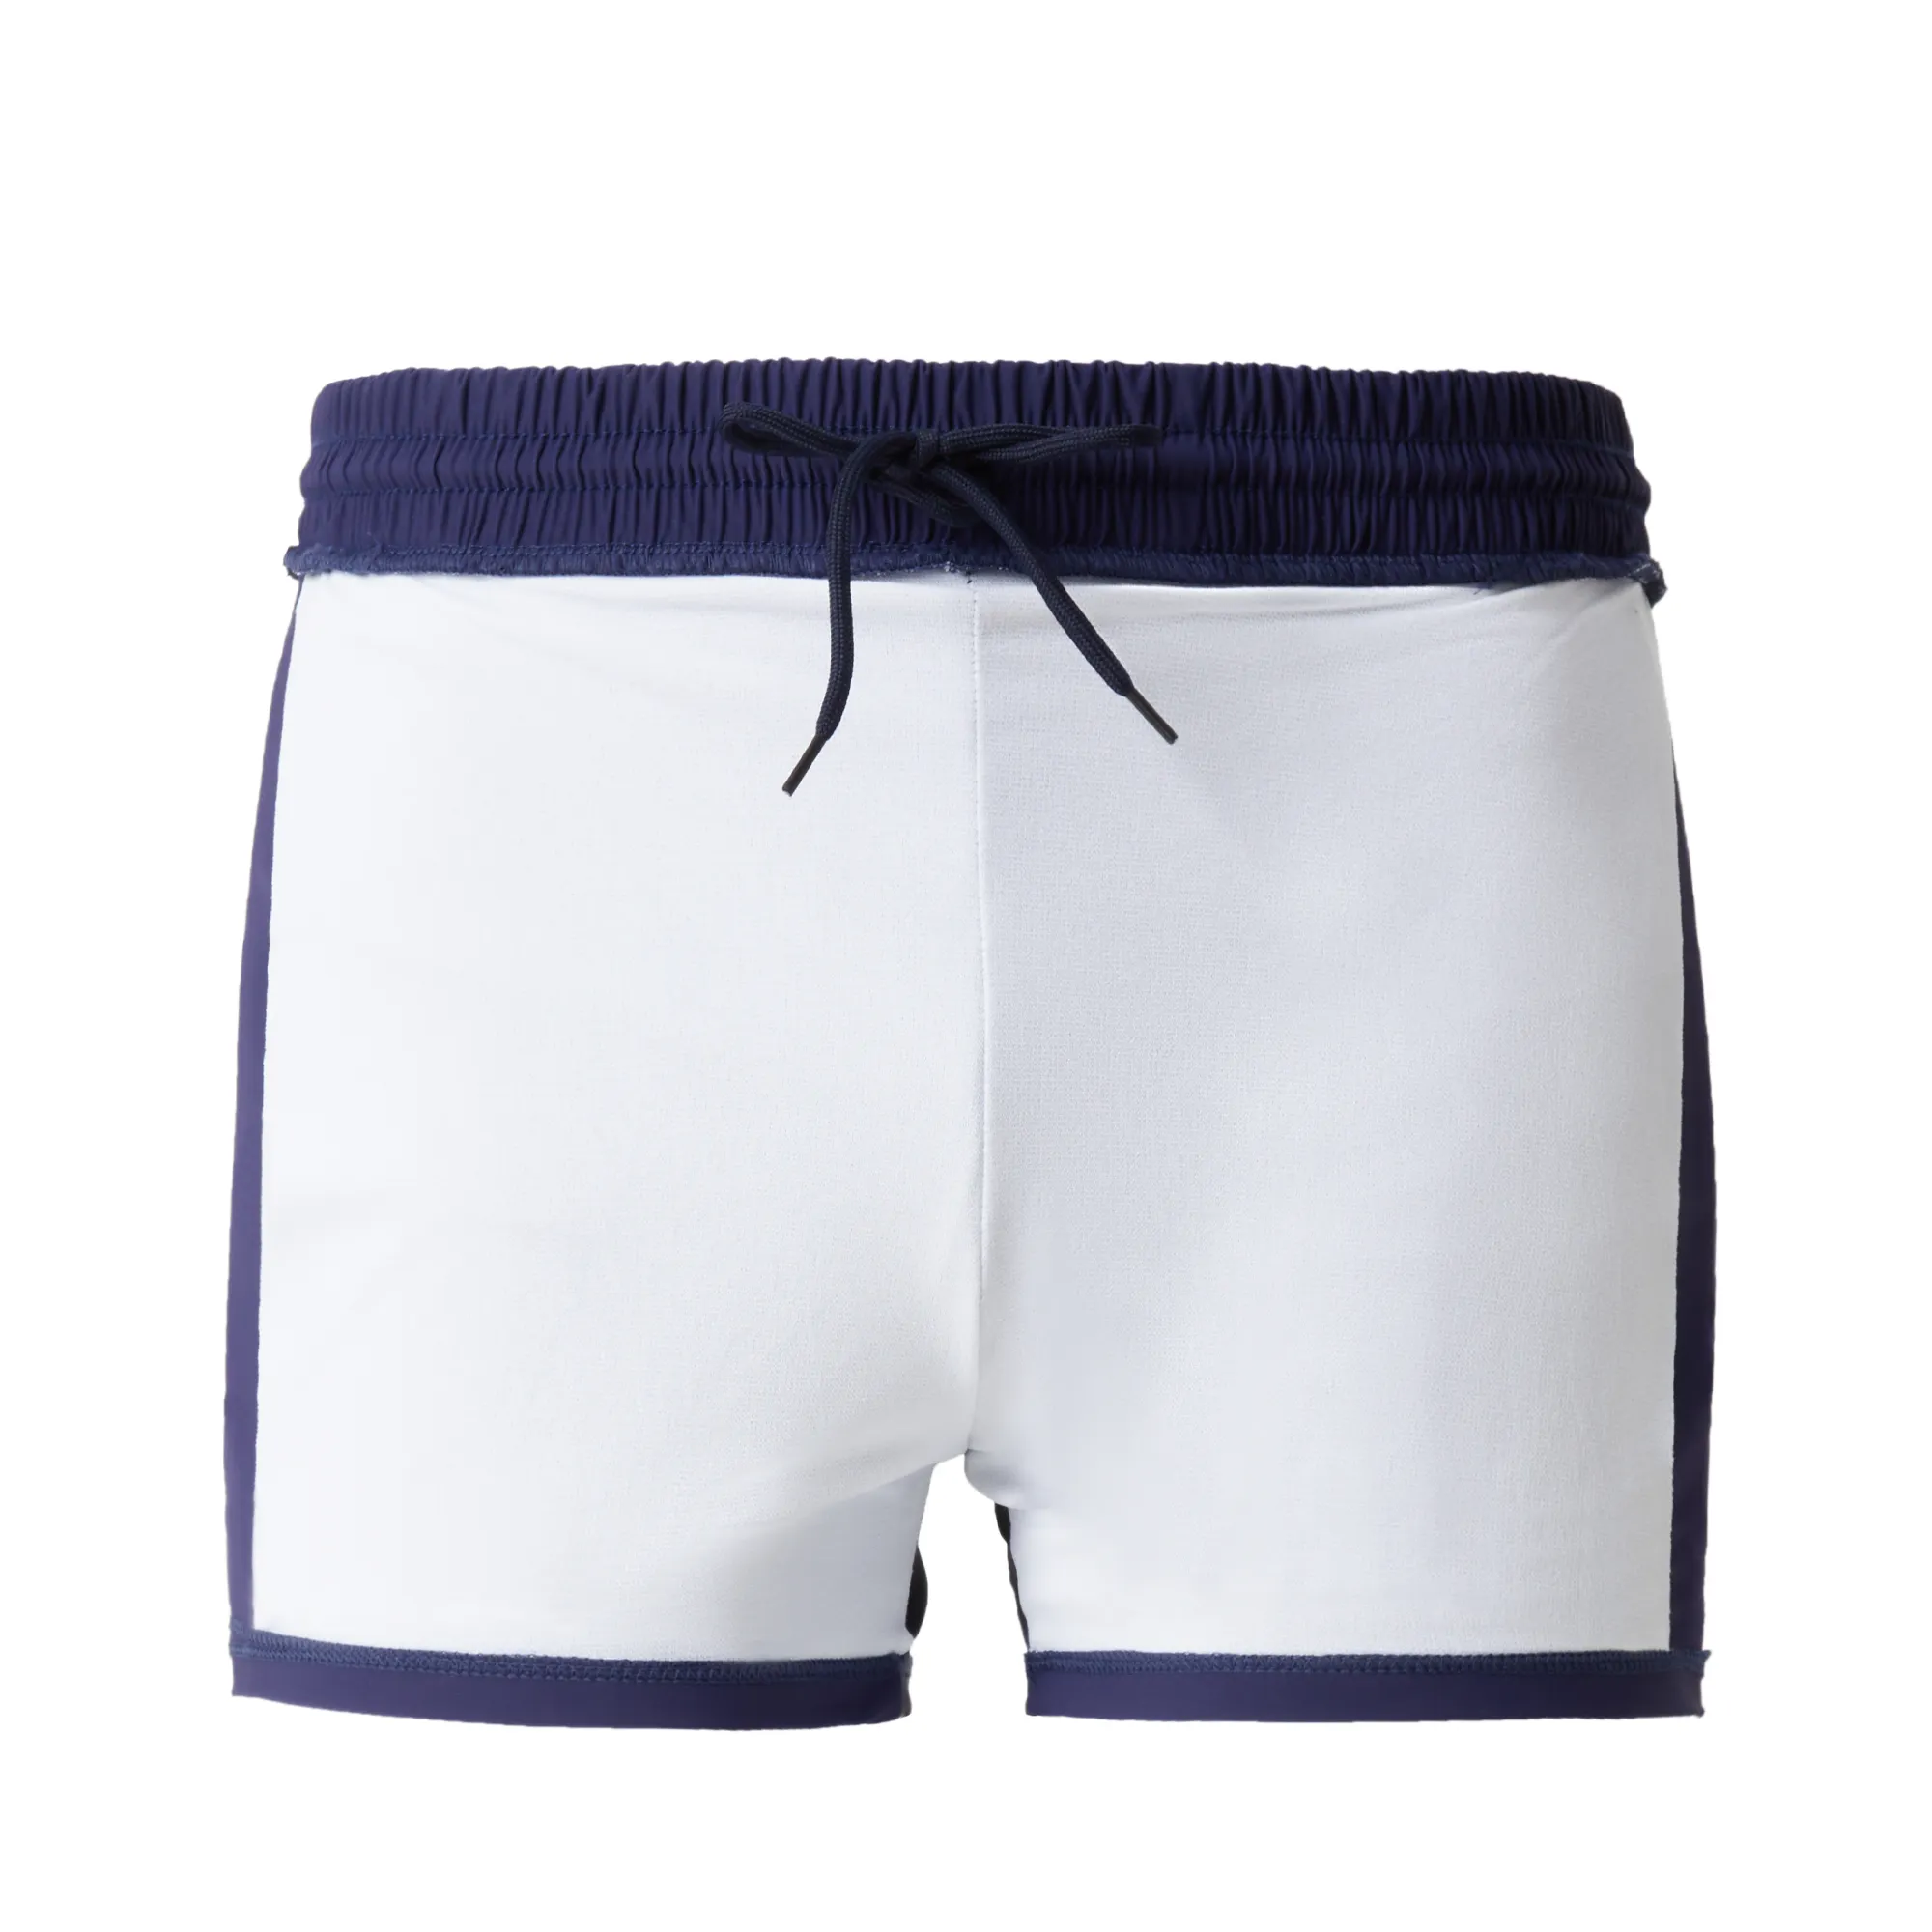 לוגו מותאם אישית סיטונאי גברים בגד ים שחייה מכנסיים קצרים בוראד חוסמים לבנים חוף ניילון 2 ב-1 מודפס מהיר יבש באיכות גבוהה